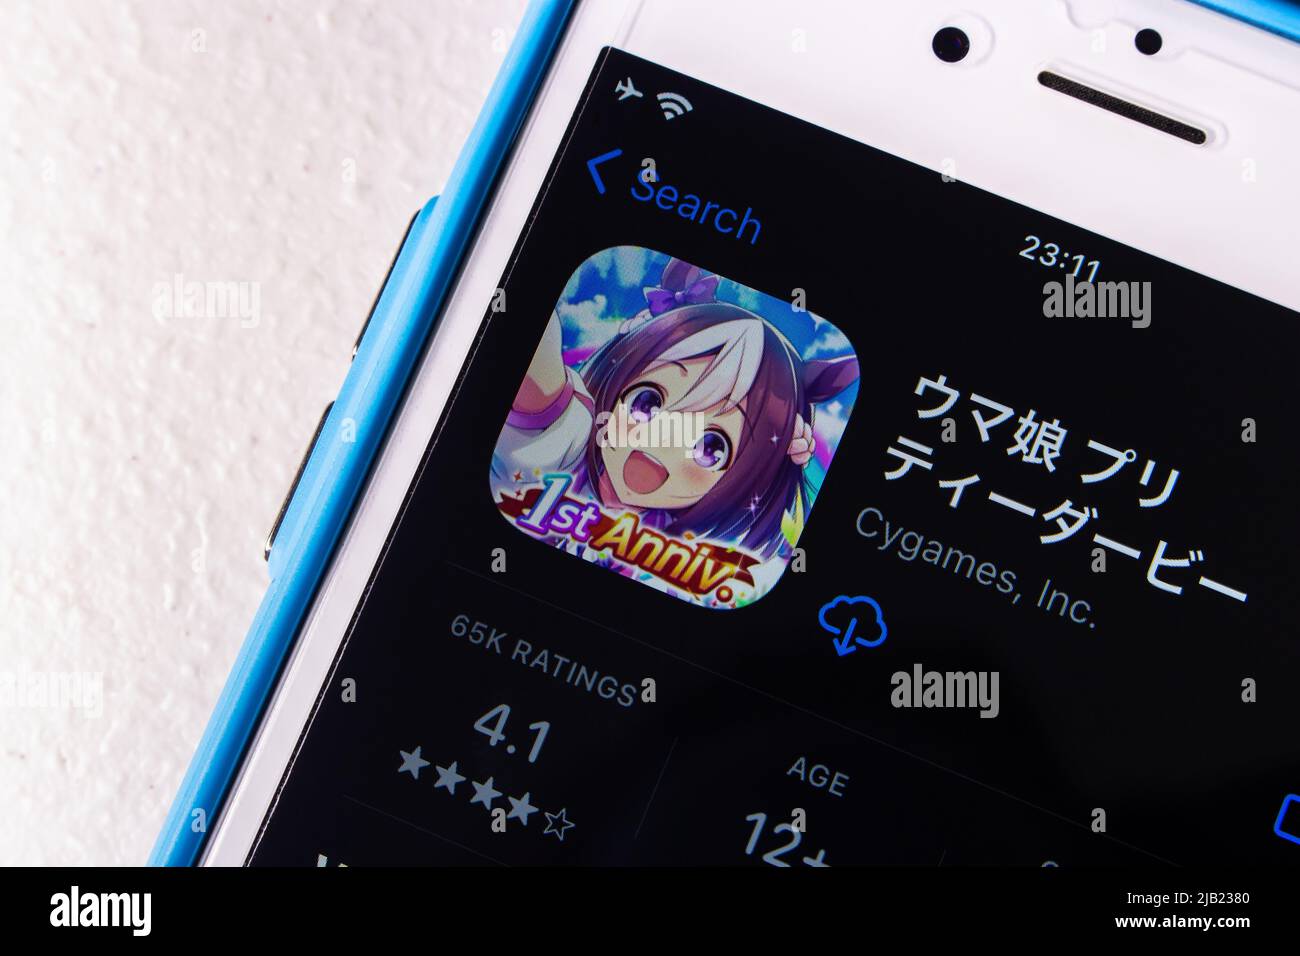 Uma Musume Pretty Derby App (Übersetzung: Horse Girl Pretty Derby) im App Store auf dem iPhone. Uma Musume ist ein Multimedia-Franchise von Cygames. Stockfoto